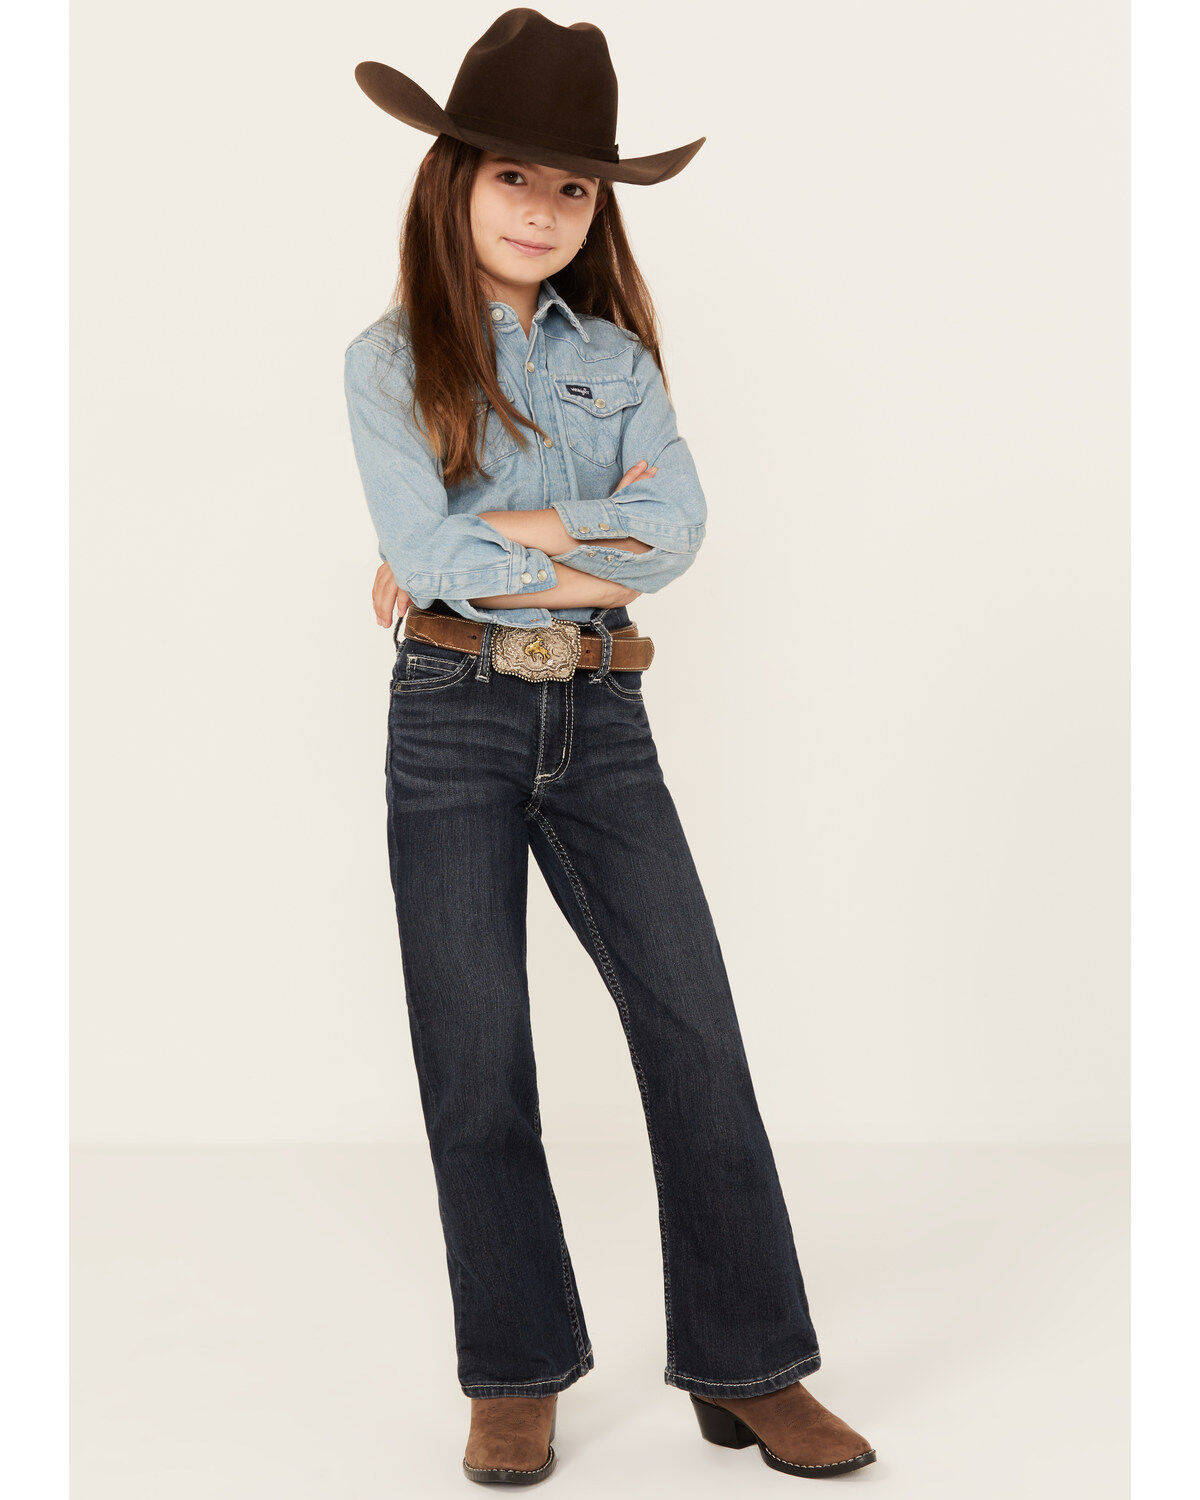 Essentials Girls' Boot-Cut Jeans Bambina 